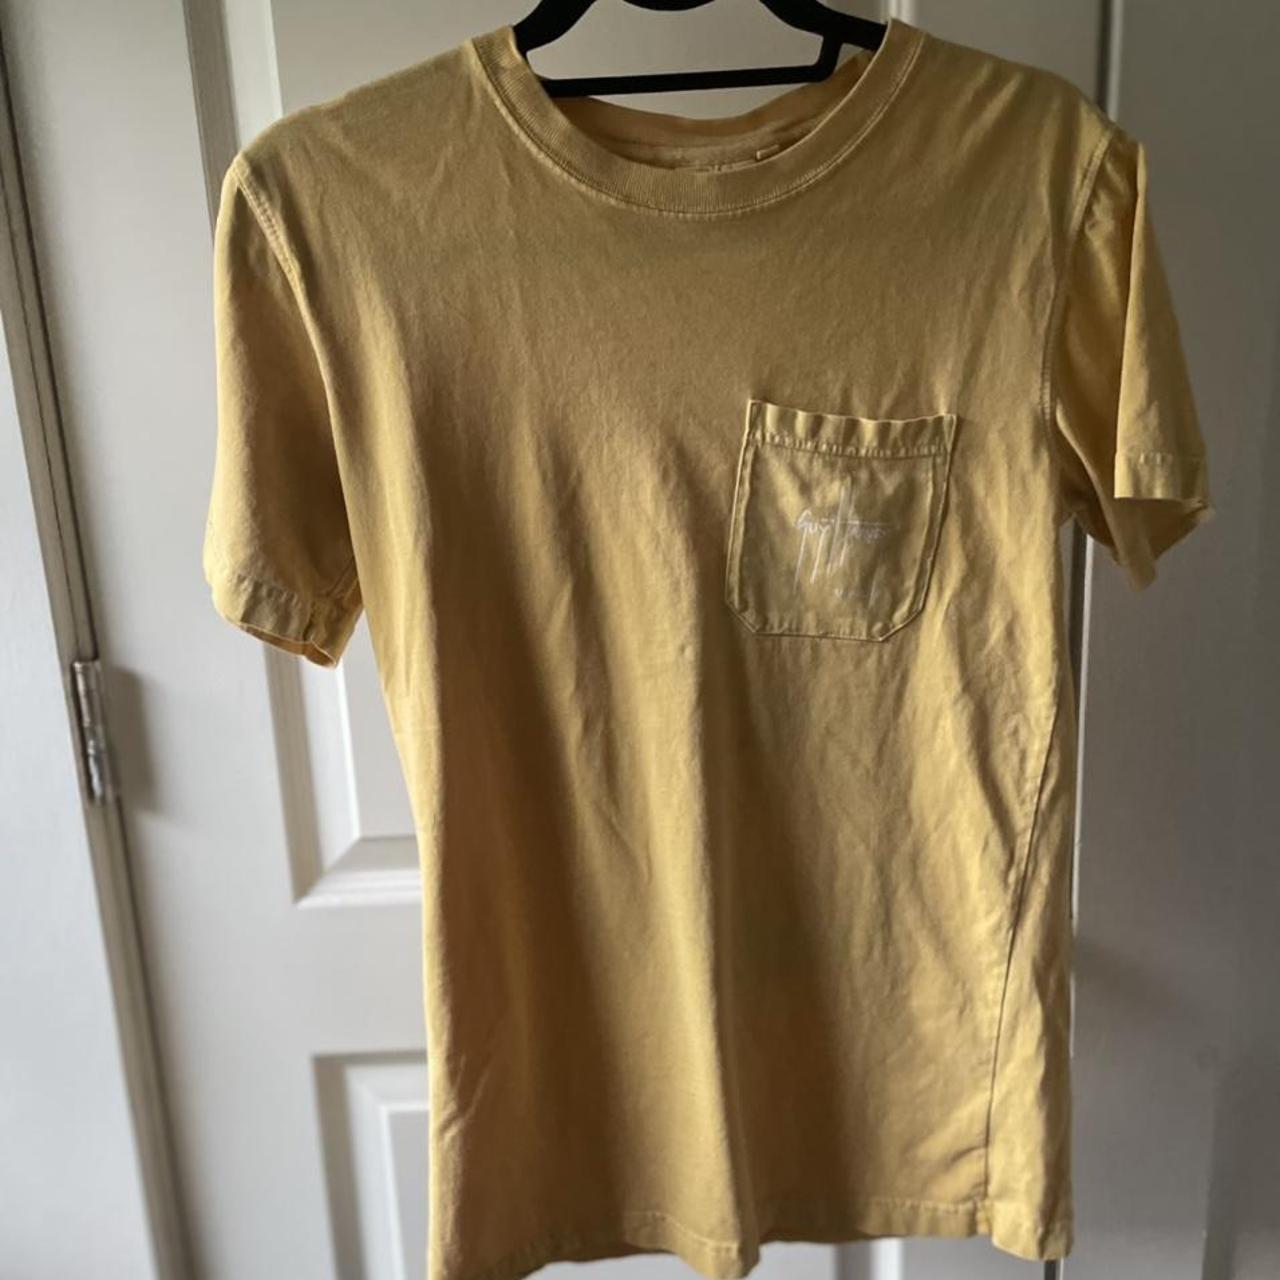 Guy Harvey Women's Yellow and Cream T-shirt